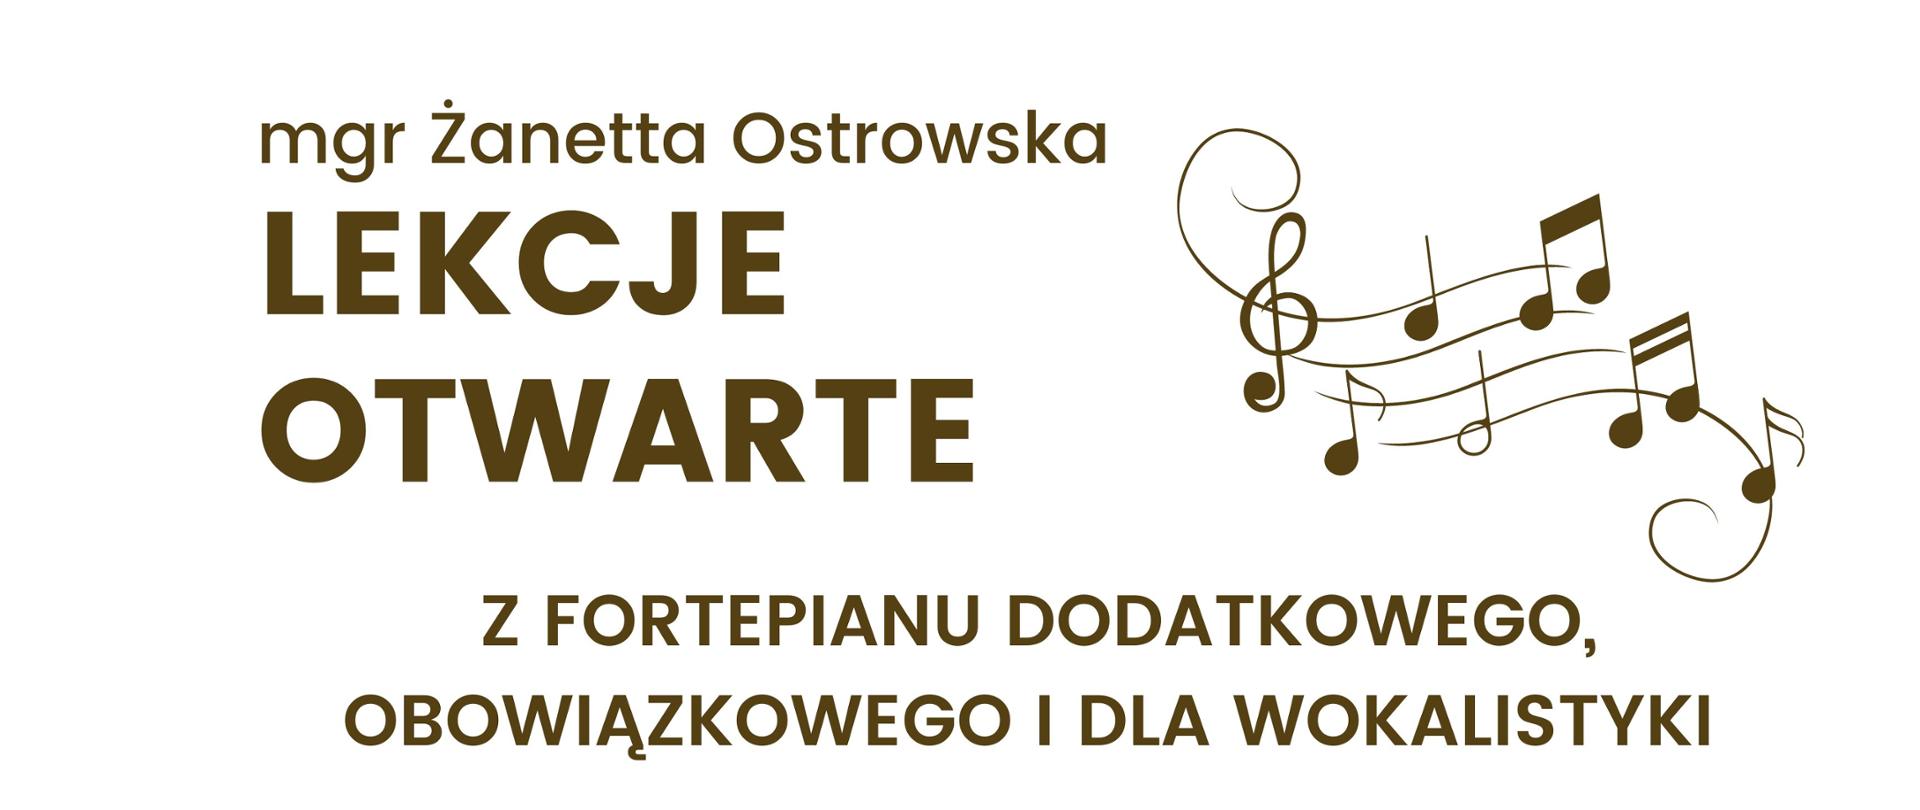 Lekcje otwarte z fortepianu dodatkowego, obowiązkowego i dla wokalistyki prowadzone przez mgr Żanette Ostrowska które odbędą się dnia 20 września 2023 od godz. 15:00.